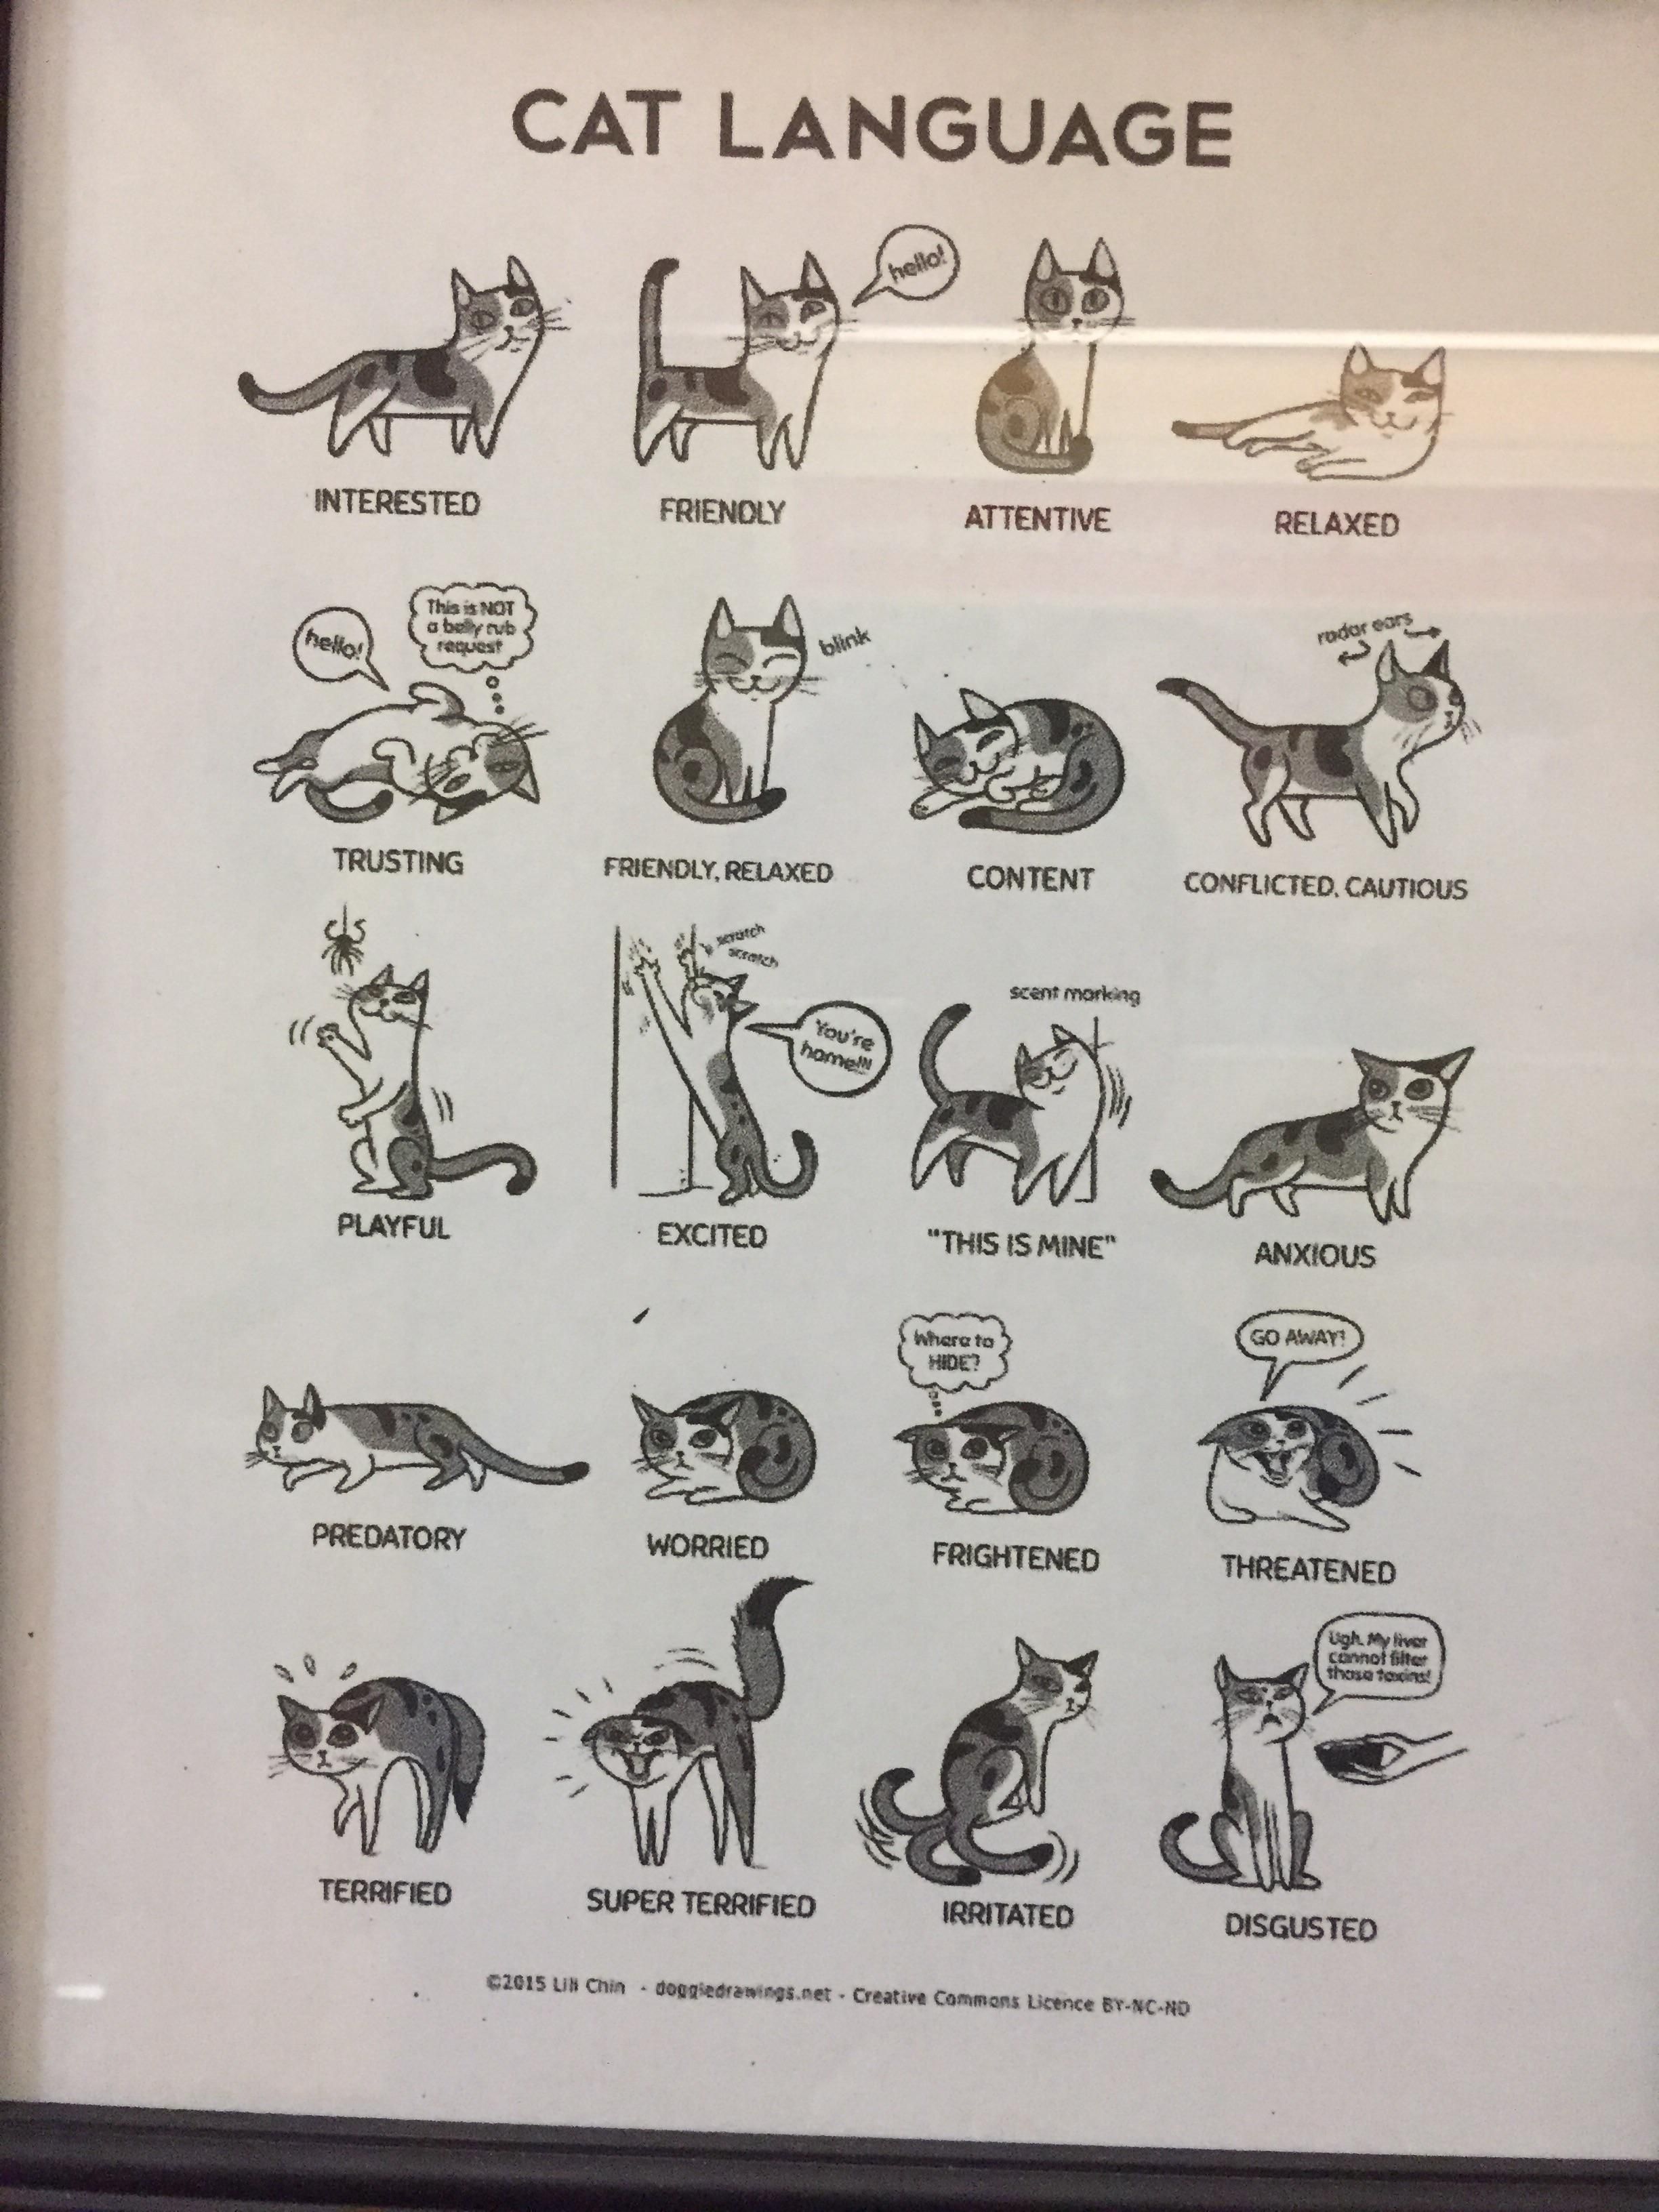 Кошачий язык или как понять кошку